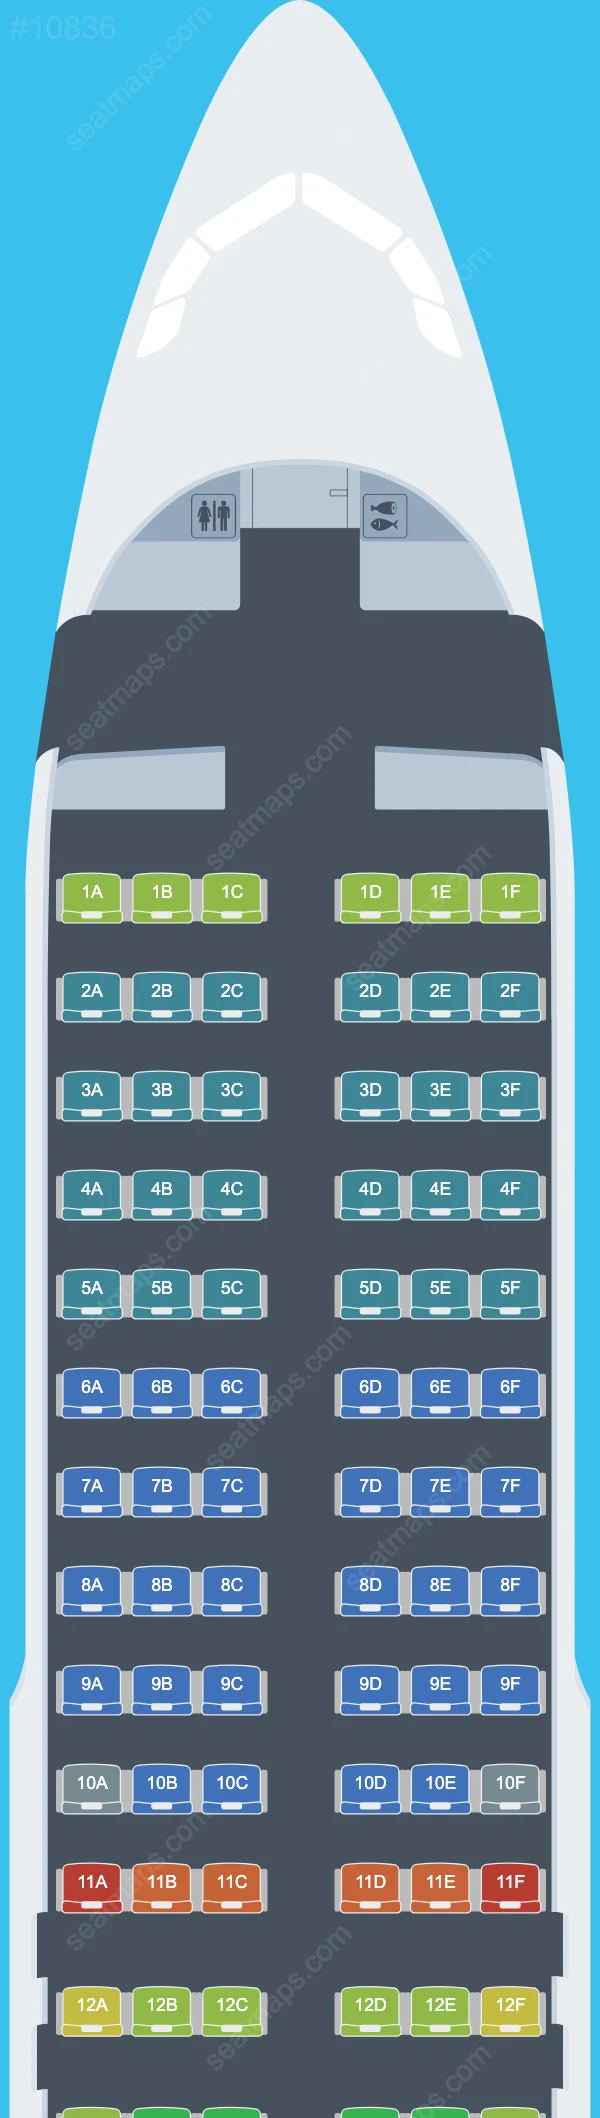 Ultra Air Airbus A320 Seat Maps A320-200